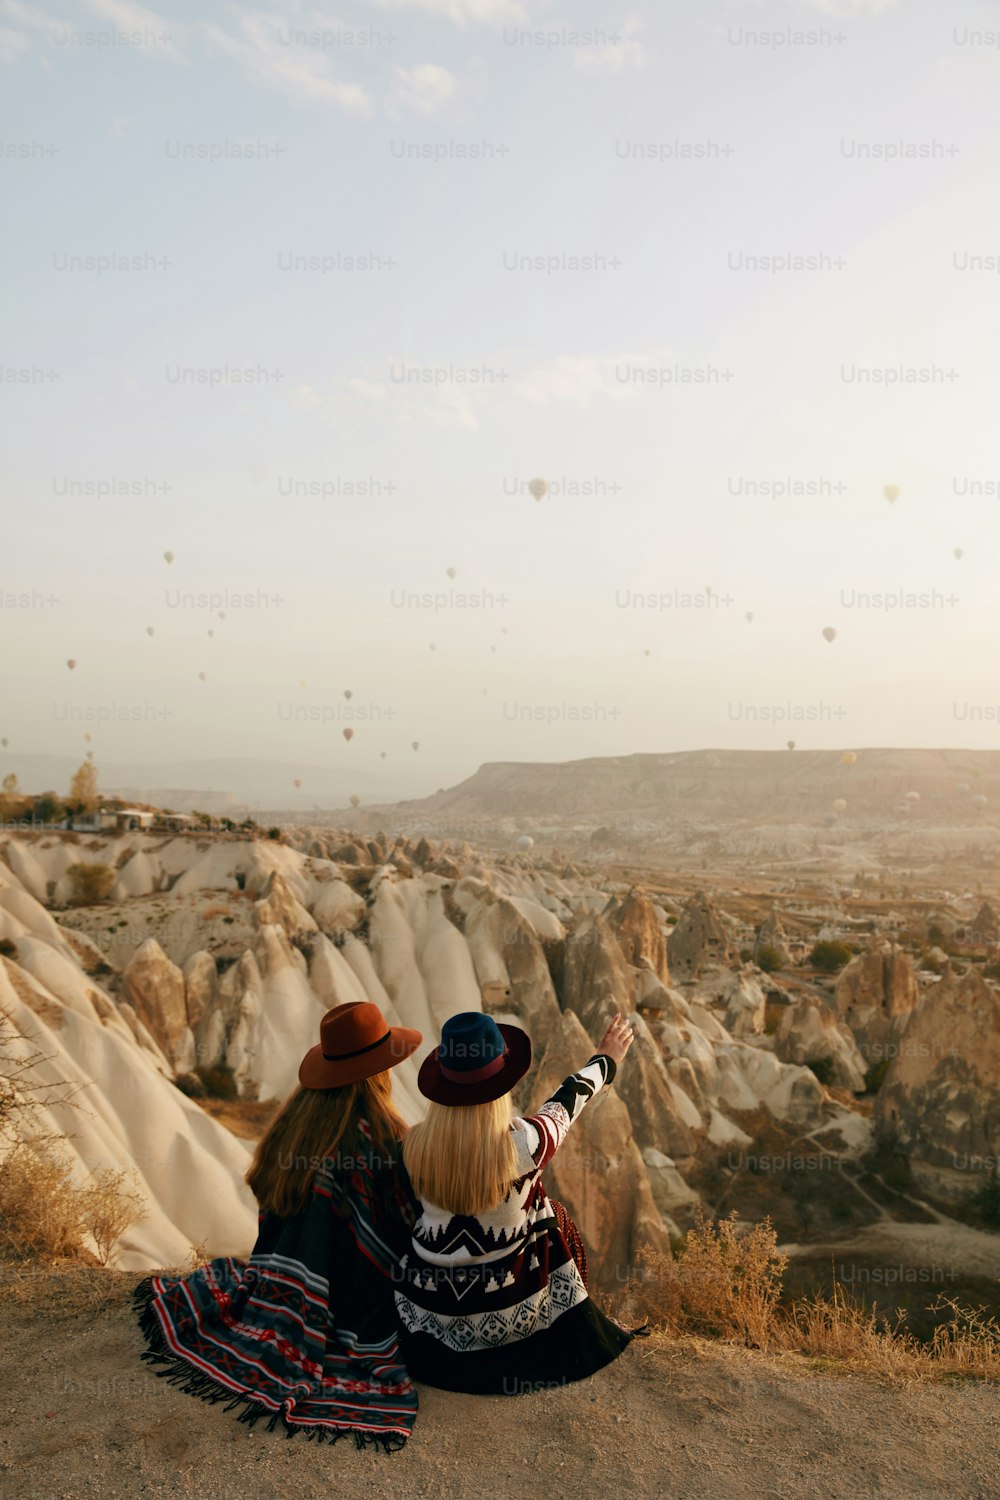 Viajar. Mulheres viajantes olhando para voar balões de ar quente no céu, mulheres de chapéus sentados na colina apreciando o pôr do sol. Alta Resolução